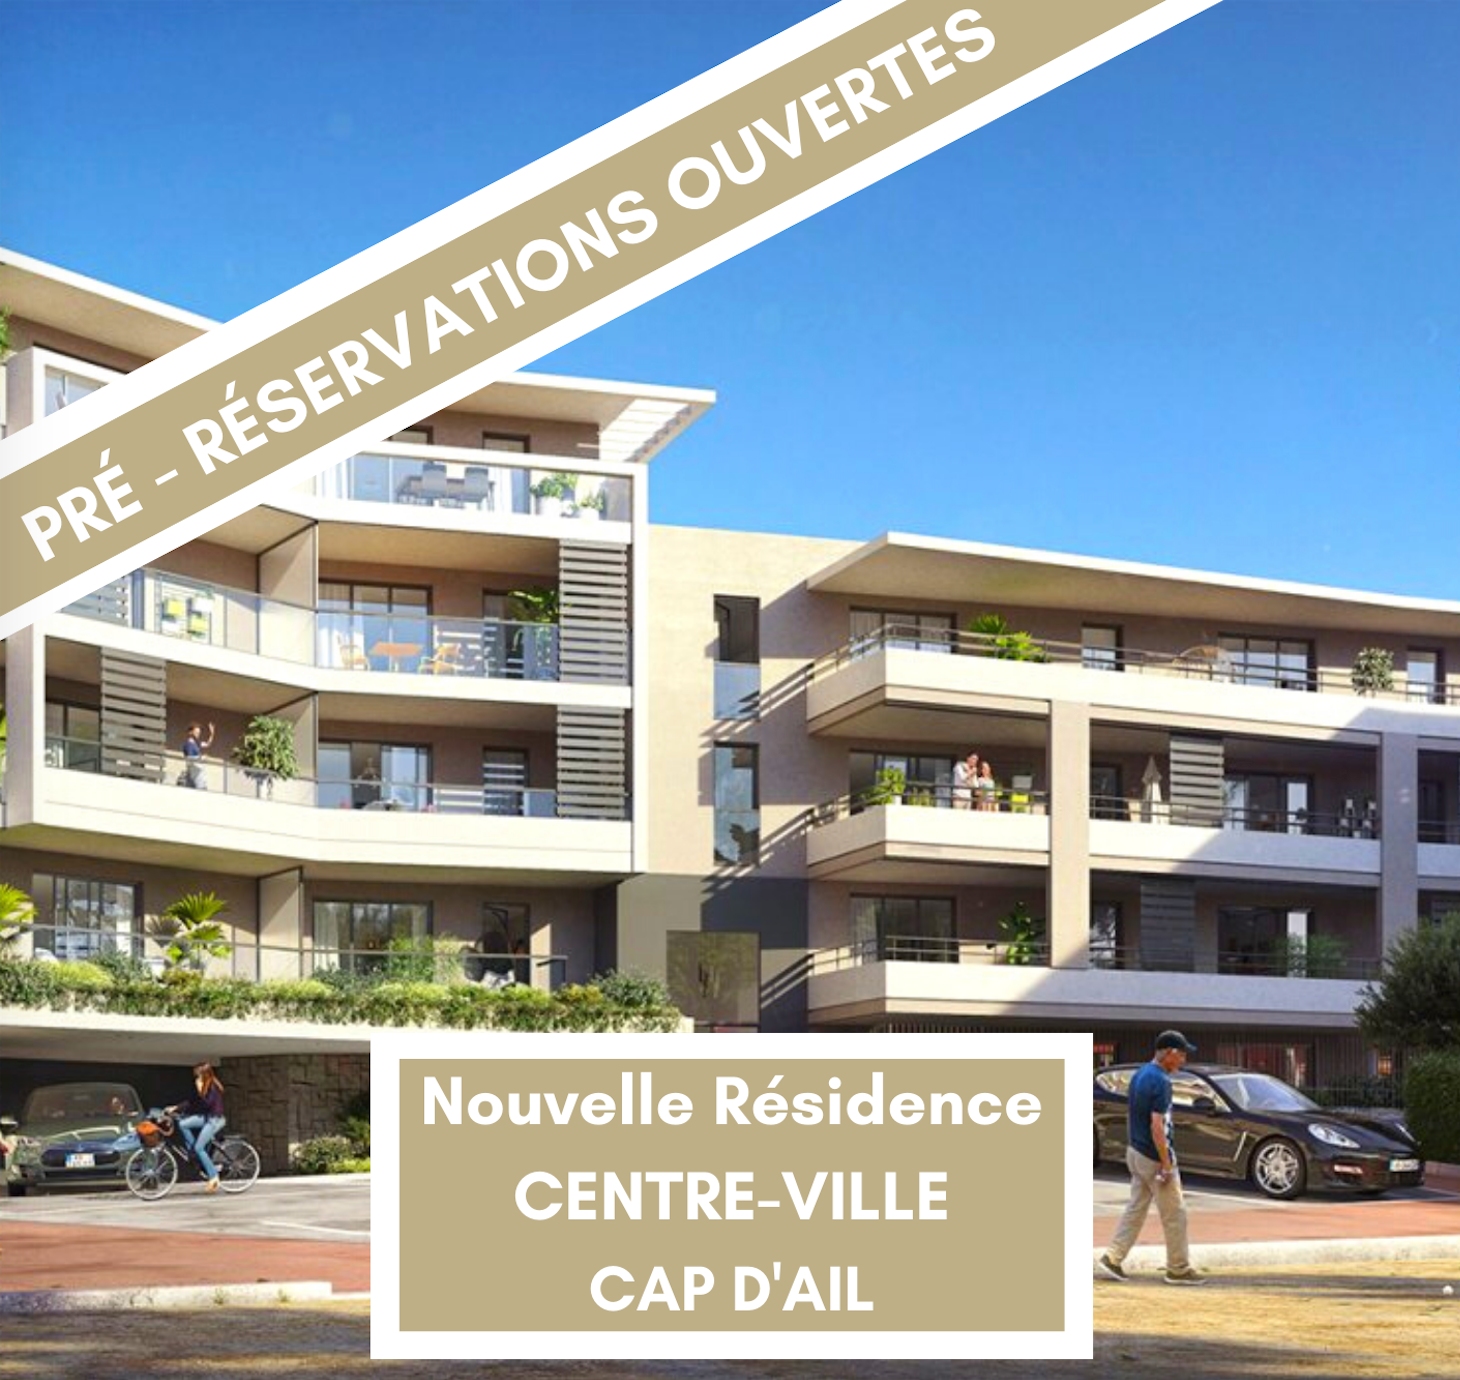 Pré-réservations ouvertes pour programme neuf résidence au centre-ville de CAP D'AIL